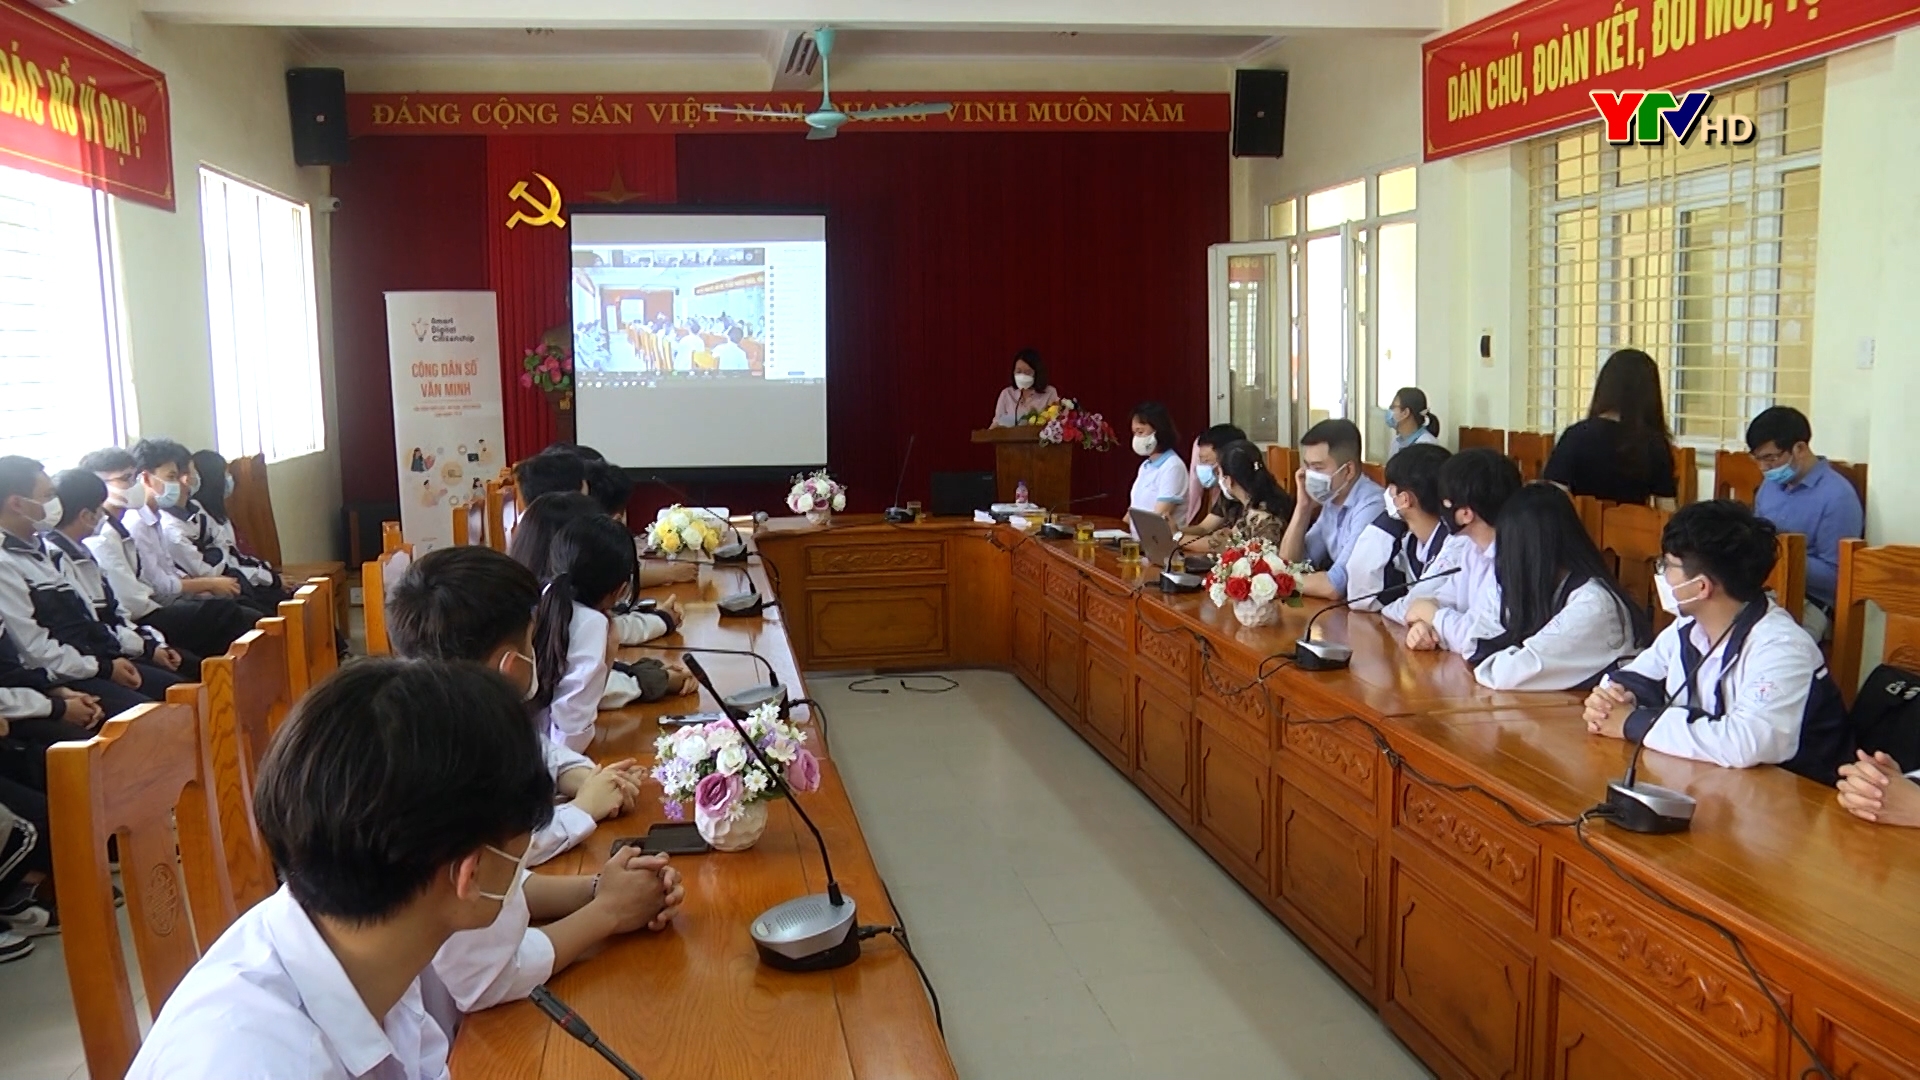 Hơn 1.000 học sinh của Trường THPT Chuyên Nguyễn Tất Thành tham gia chương trình phổ biến kiến thức, kỹ năng an toàn trên mạng Internet